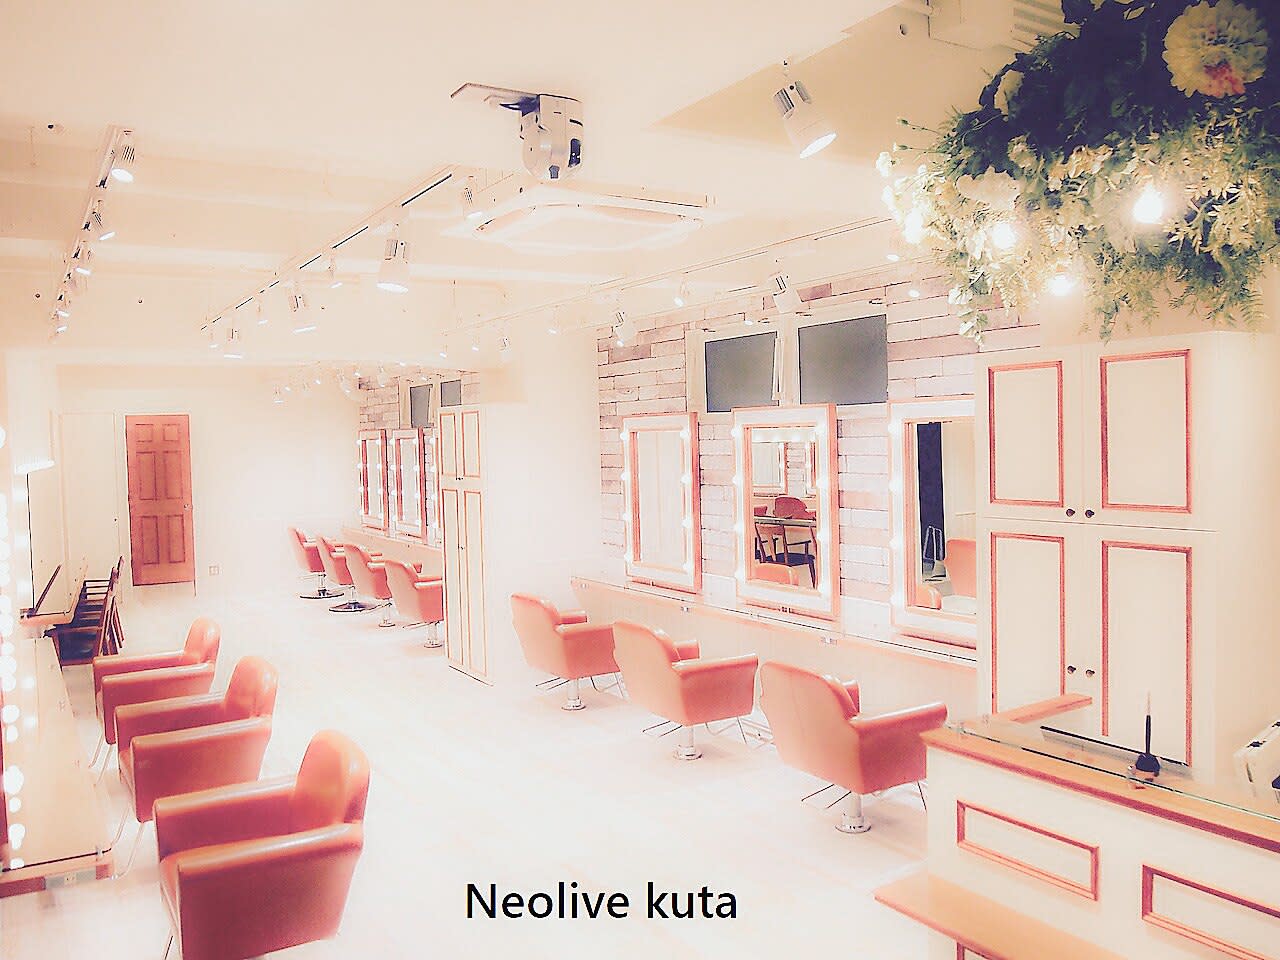 Neolive kuta 町田店のアイキャッチ画像